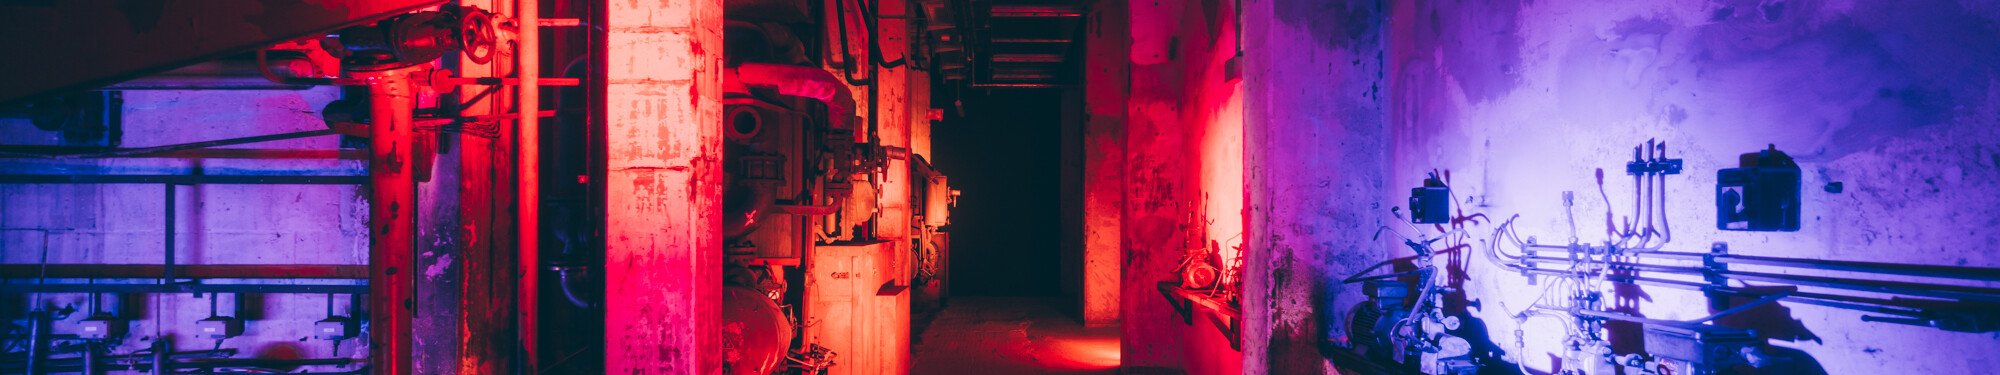 Blick in die ehemalige, mit rotem und violettem Neonlicht beleuchtete Fabrikanlage des heutigen Unesco-Welterbes Zollverein in Essen. © Tourismus NRW e.V./Johannes Höhn